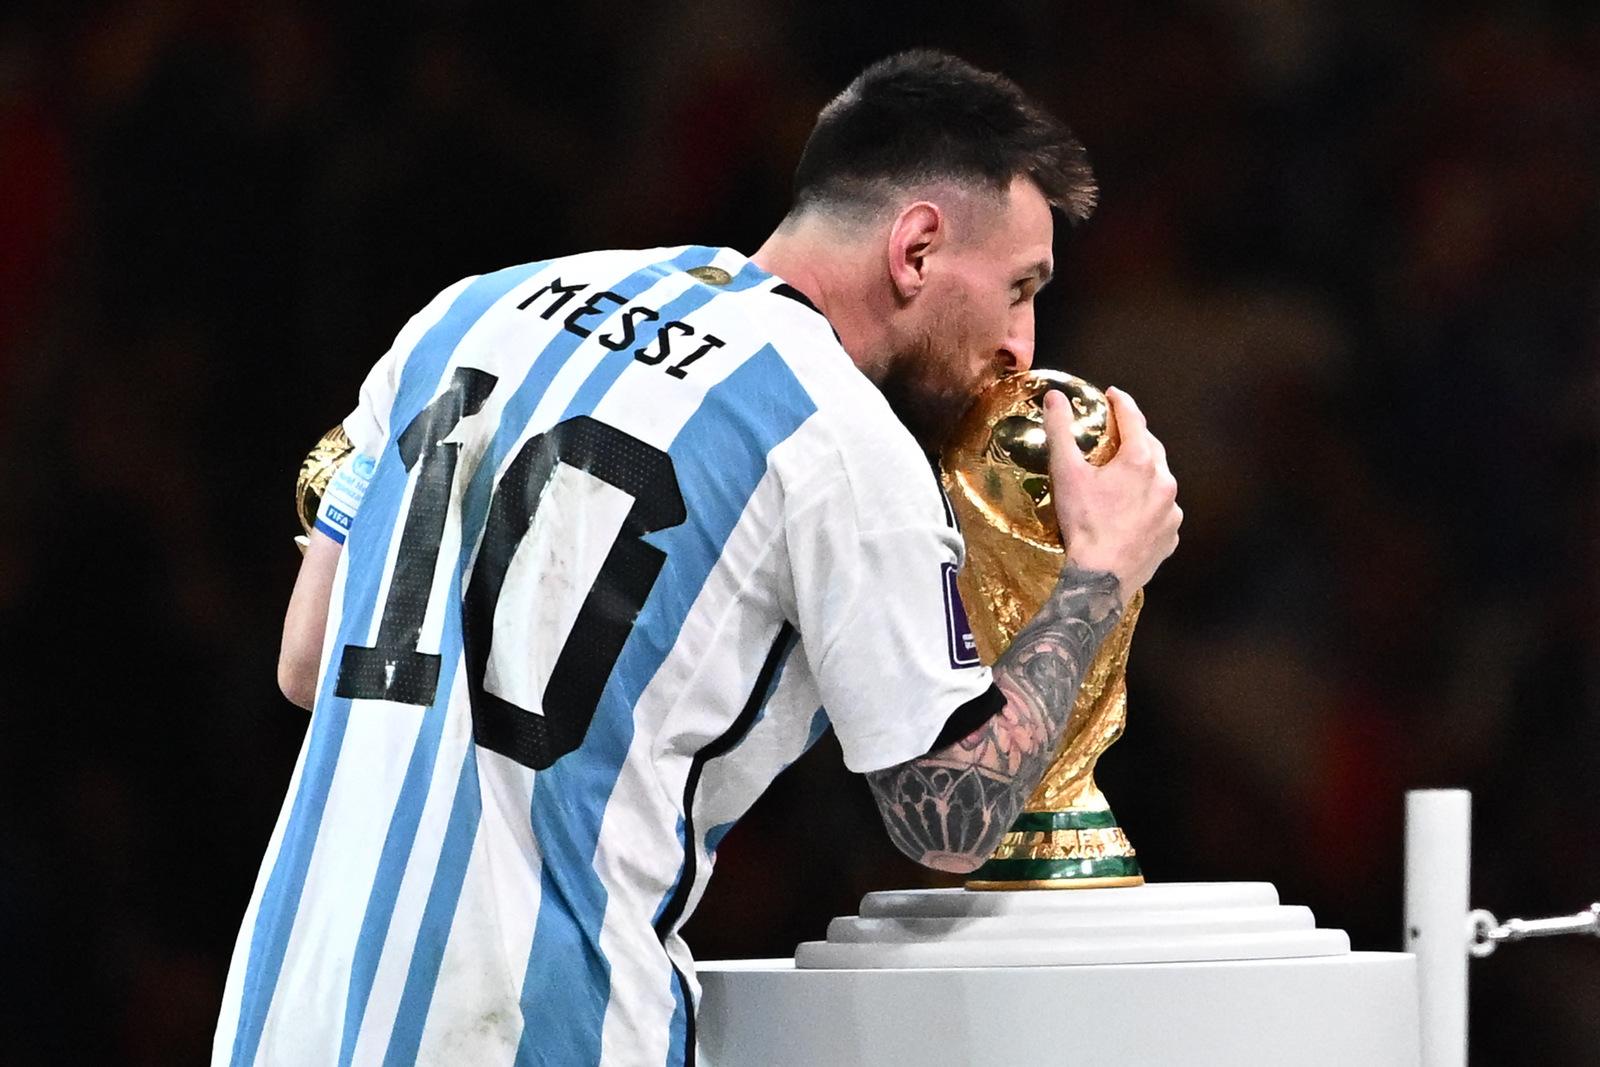 Messi se torna o maior artilheiro da Argentina em Copas do Mundo